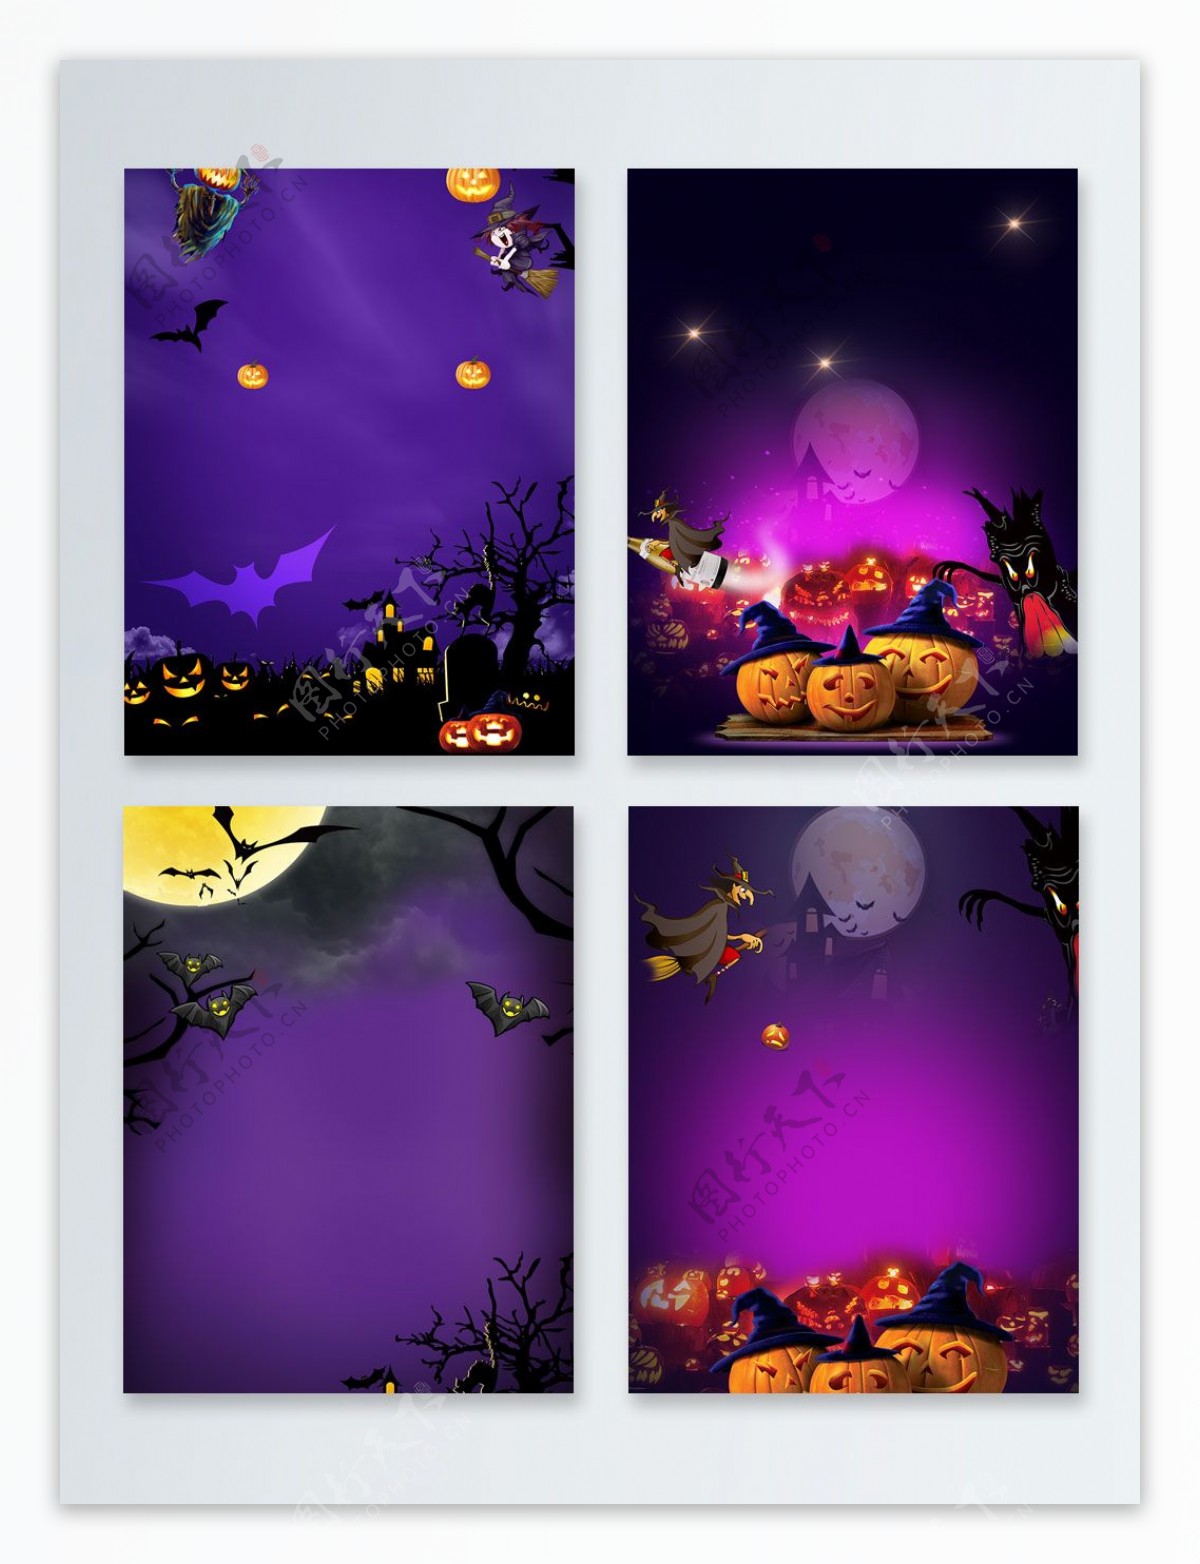 紫色恐怖月夜万圣节节日广告背景